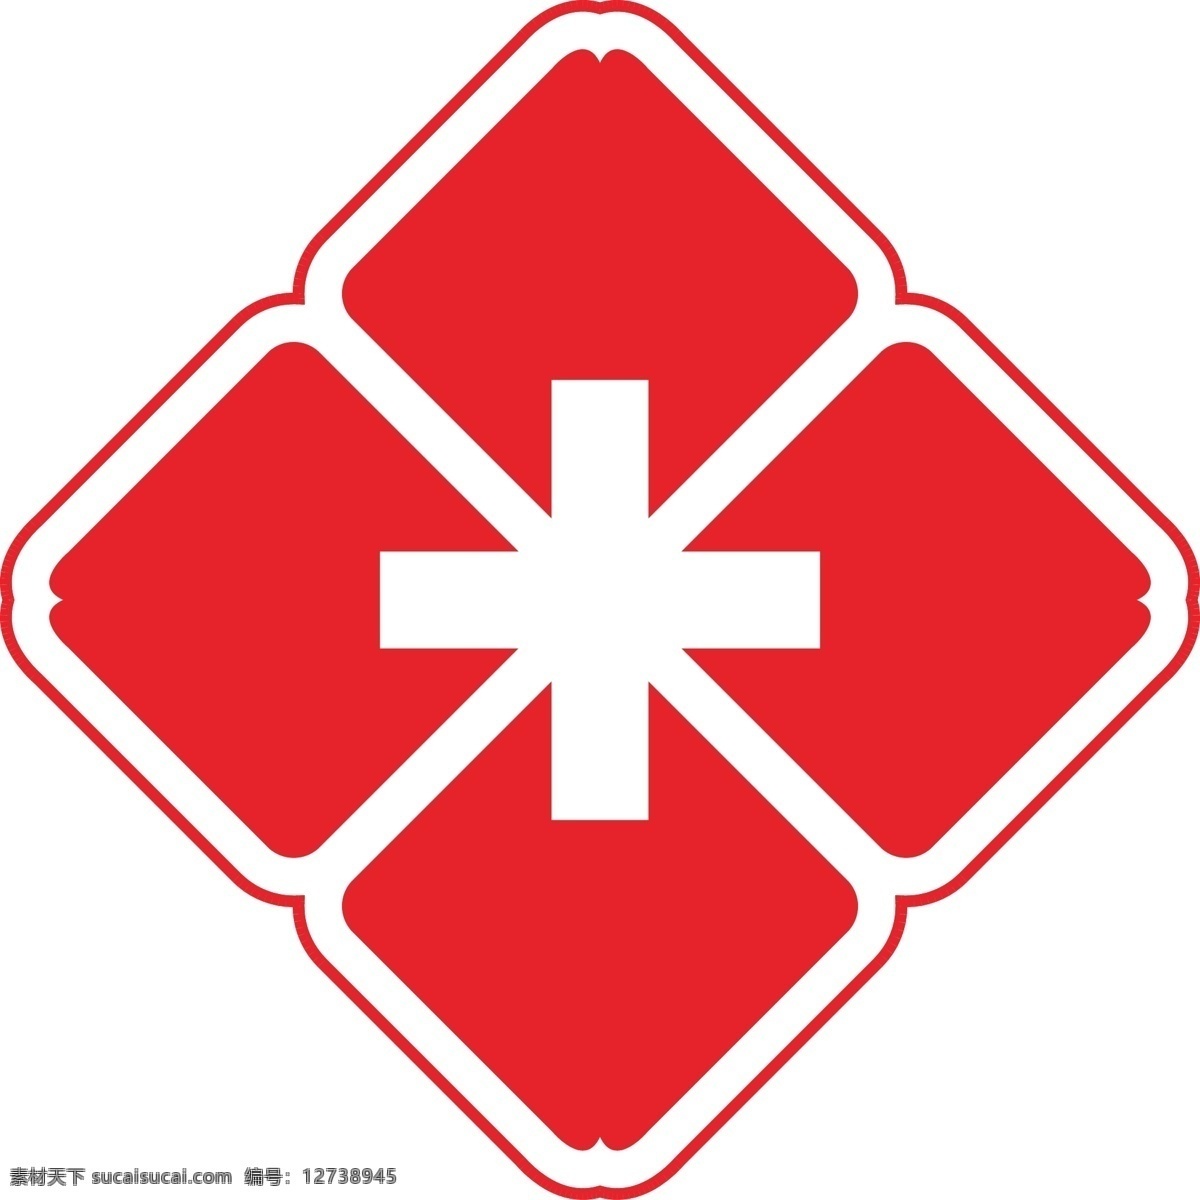 医院标志图片 医院 红十字 logo 救人 病房 标志图标 企业 标志